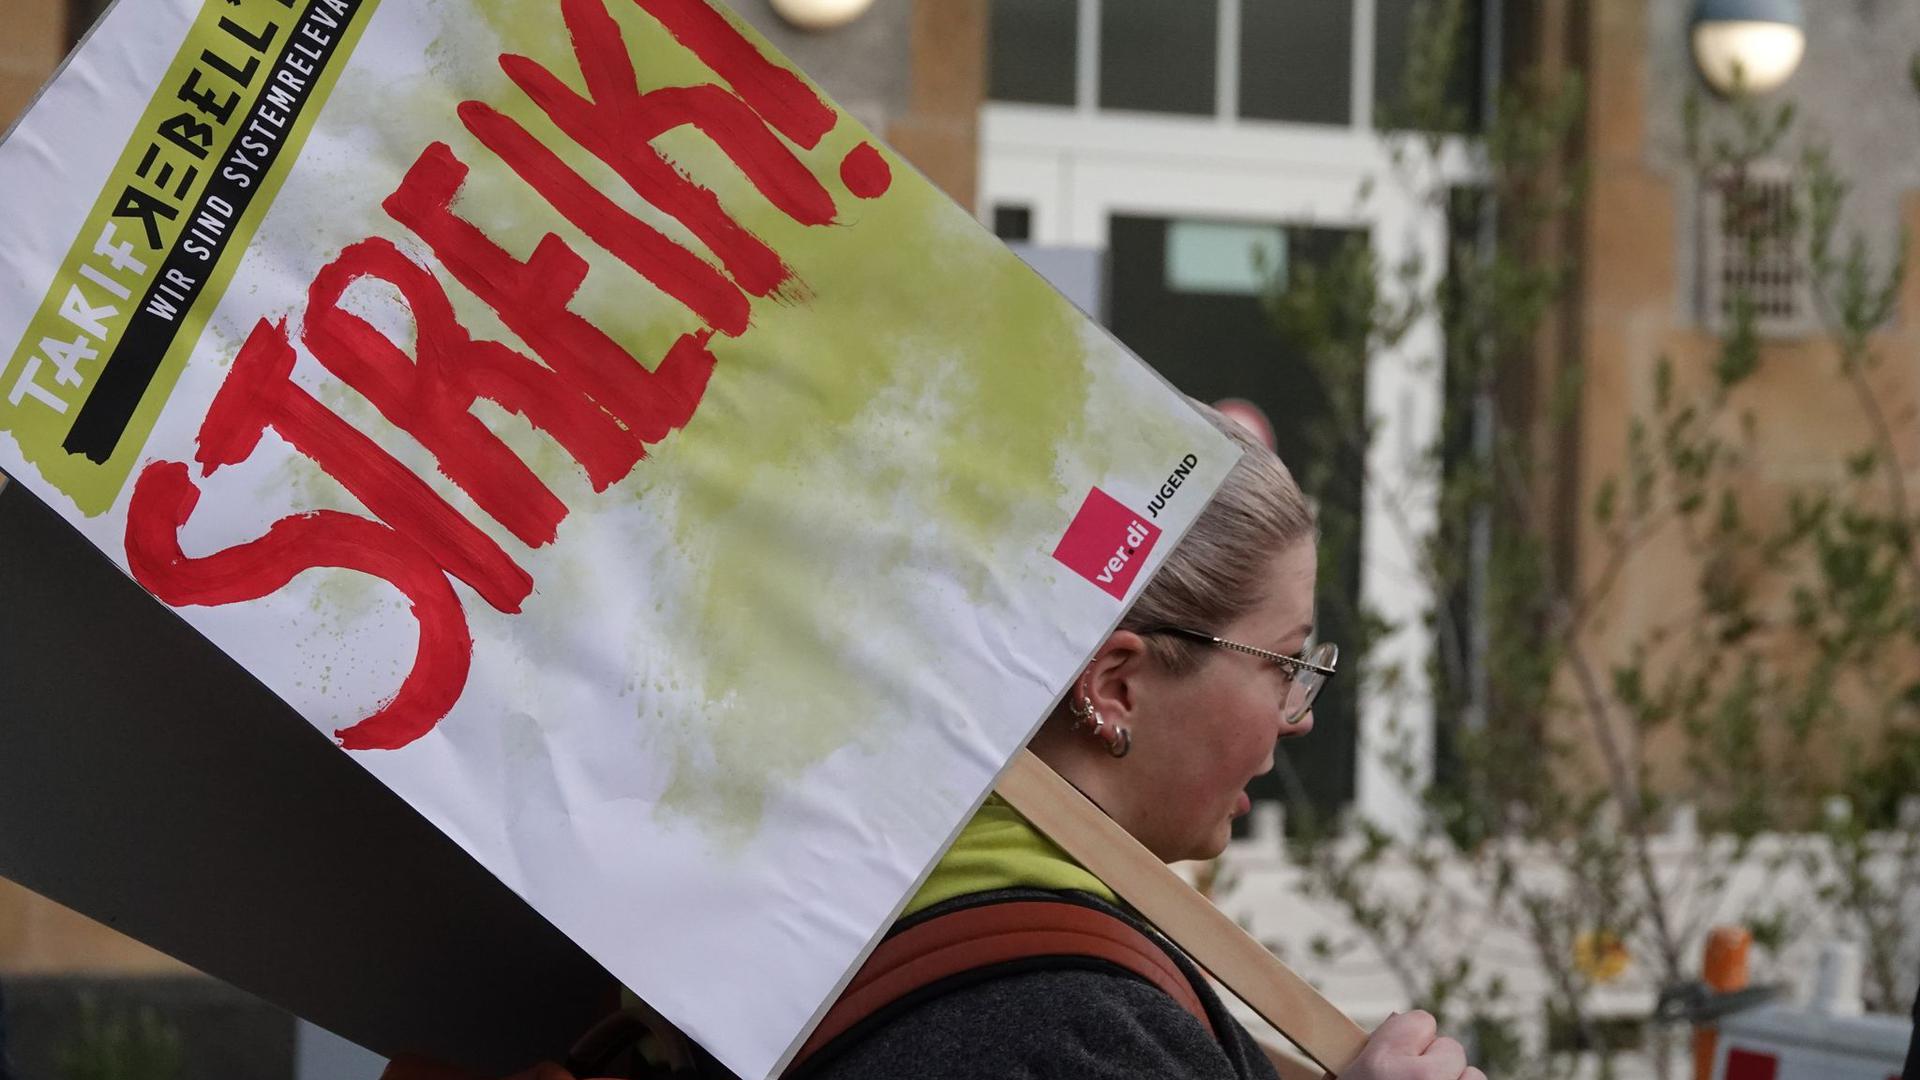 Eine Frau hält ein Schild hoch auf dem „Streik!“ steht.